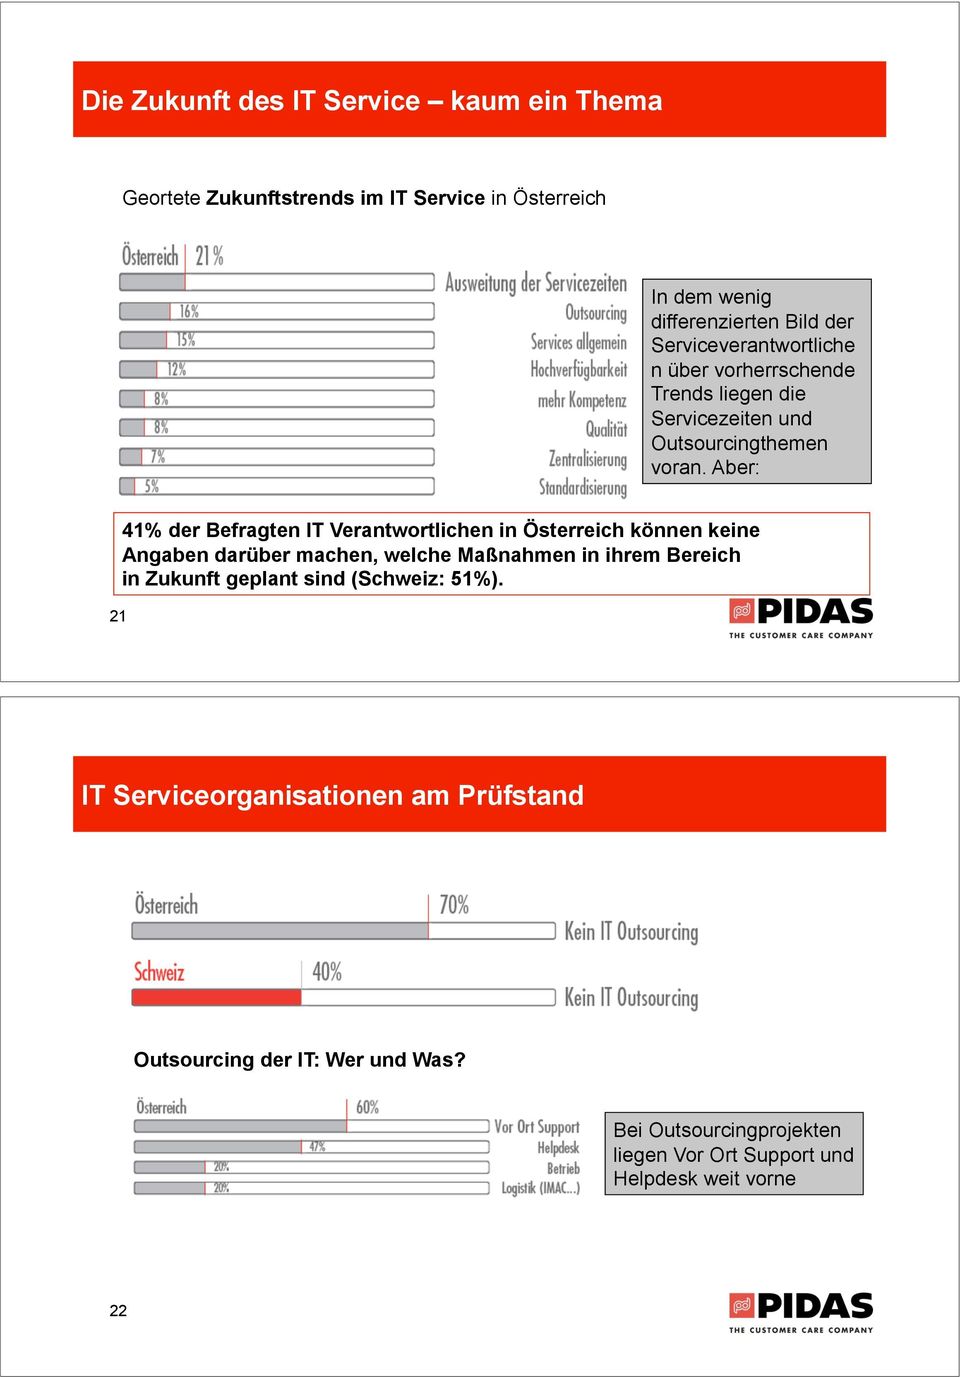 Aber: 21 41% der Befragten IT Verantwortlichen in Österreich können keine Angaben darüber machen, welche Maßnahmen in ihrem Bereich in